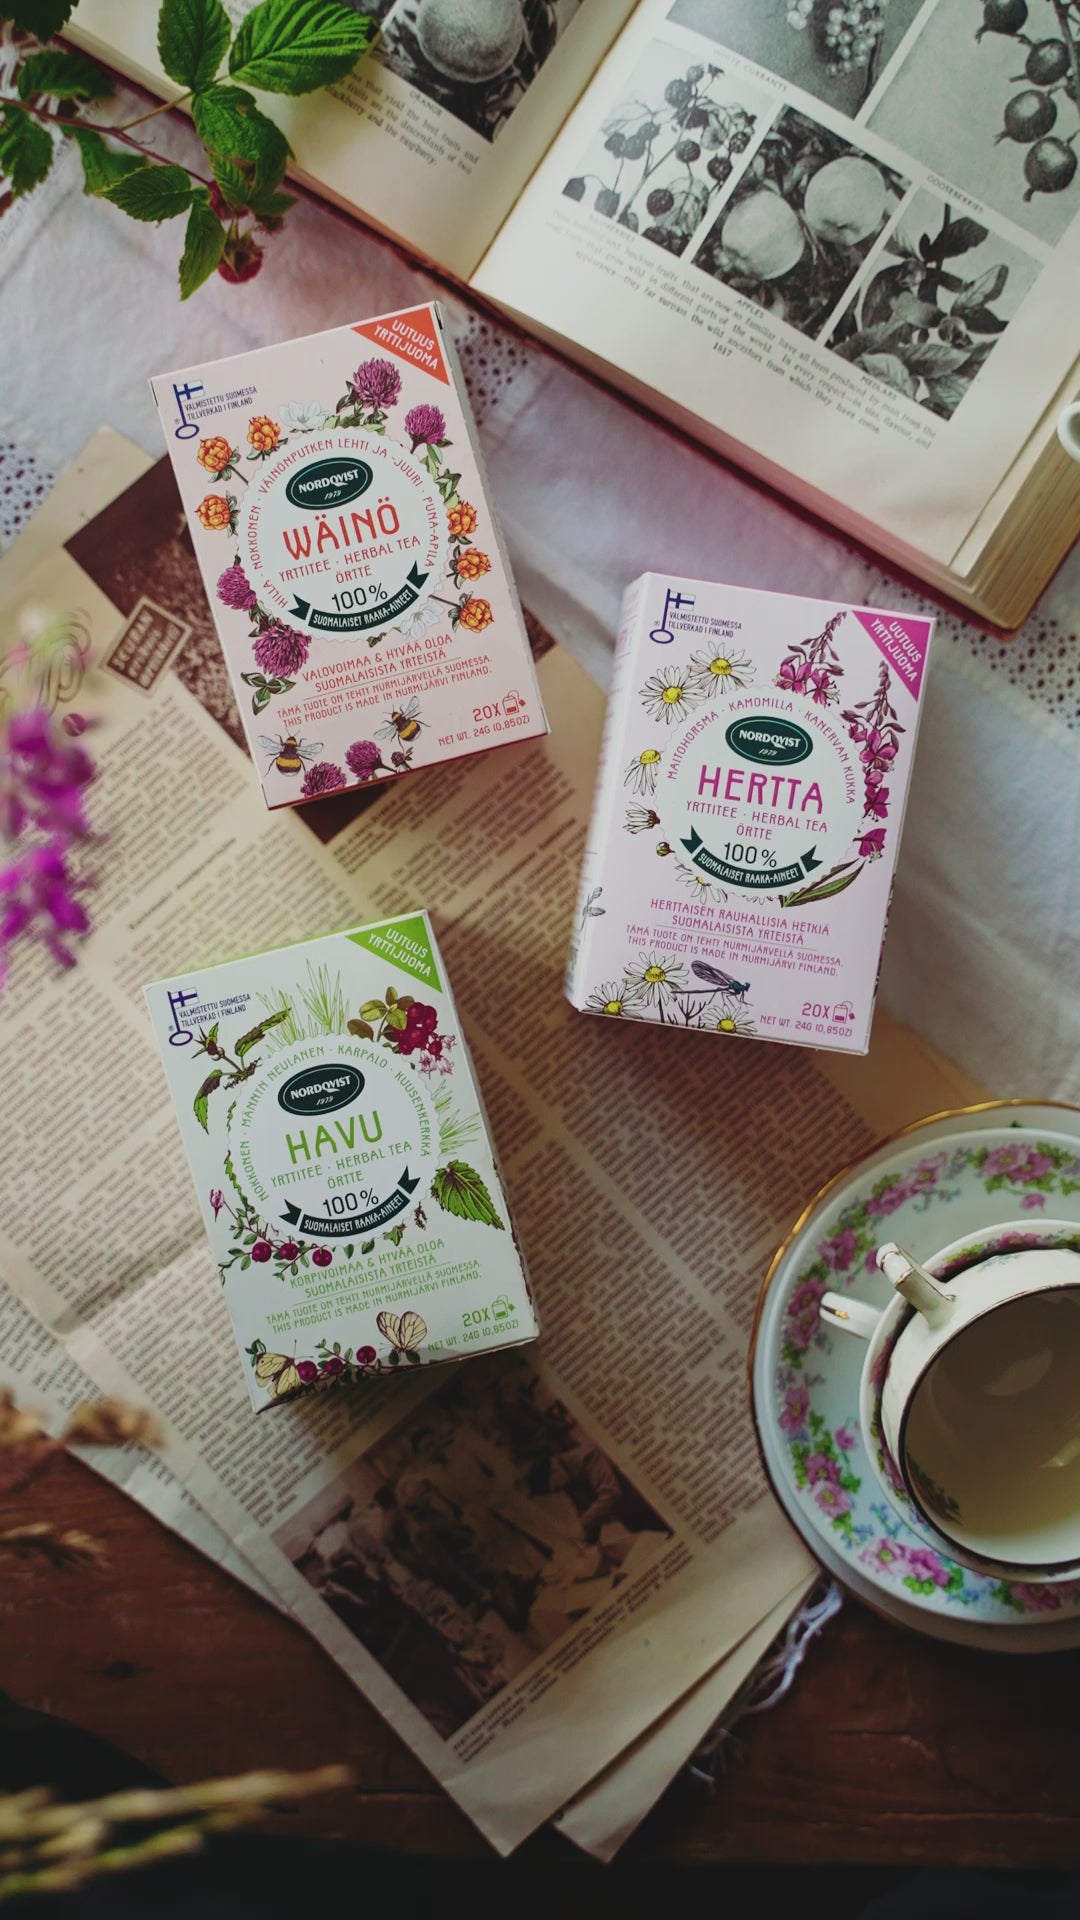 HERTTA pure herbal tea grown in Finland